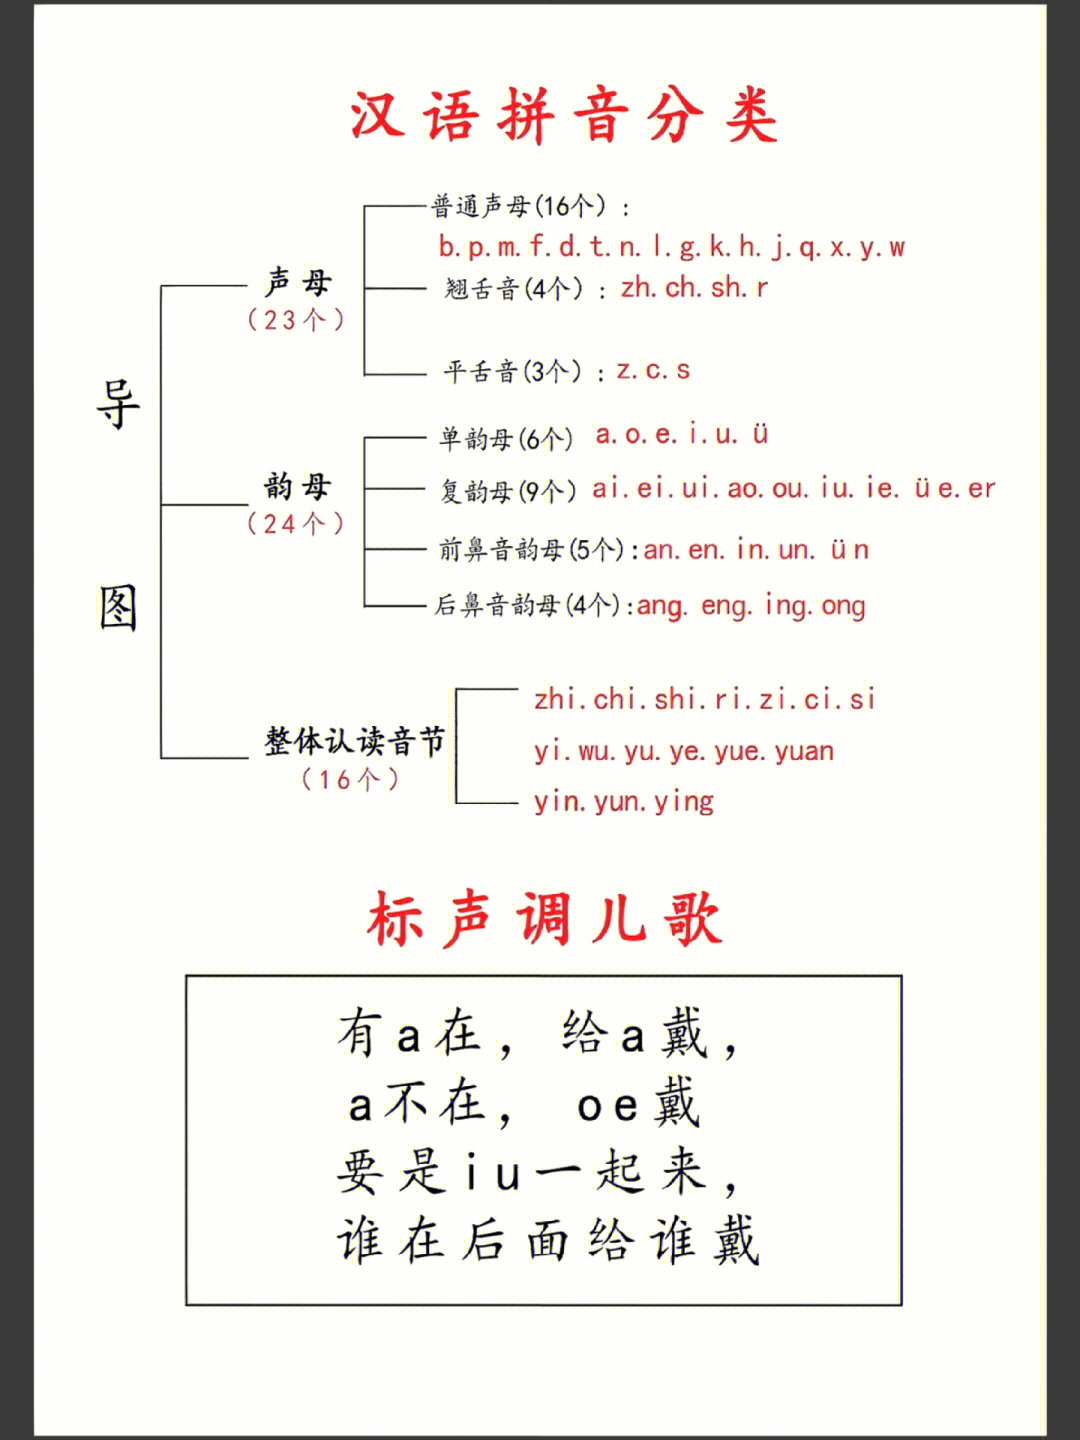 一年级汉语拼音学习方法,记忆方法,汇总成儿歌,好学好记